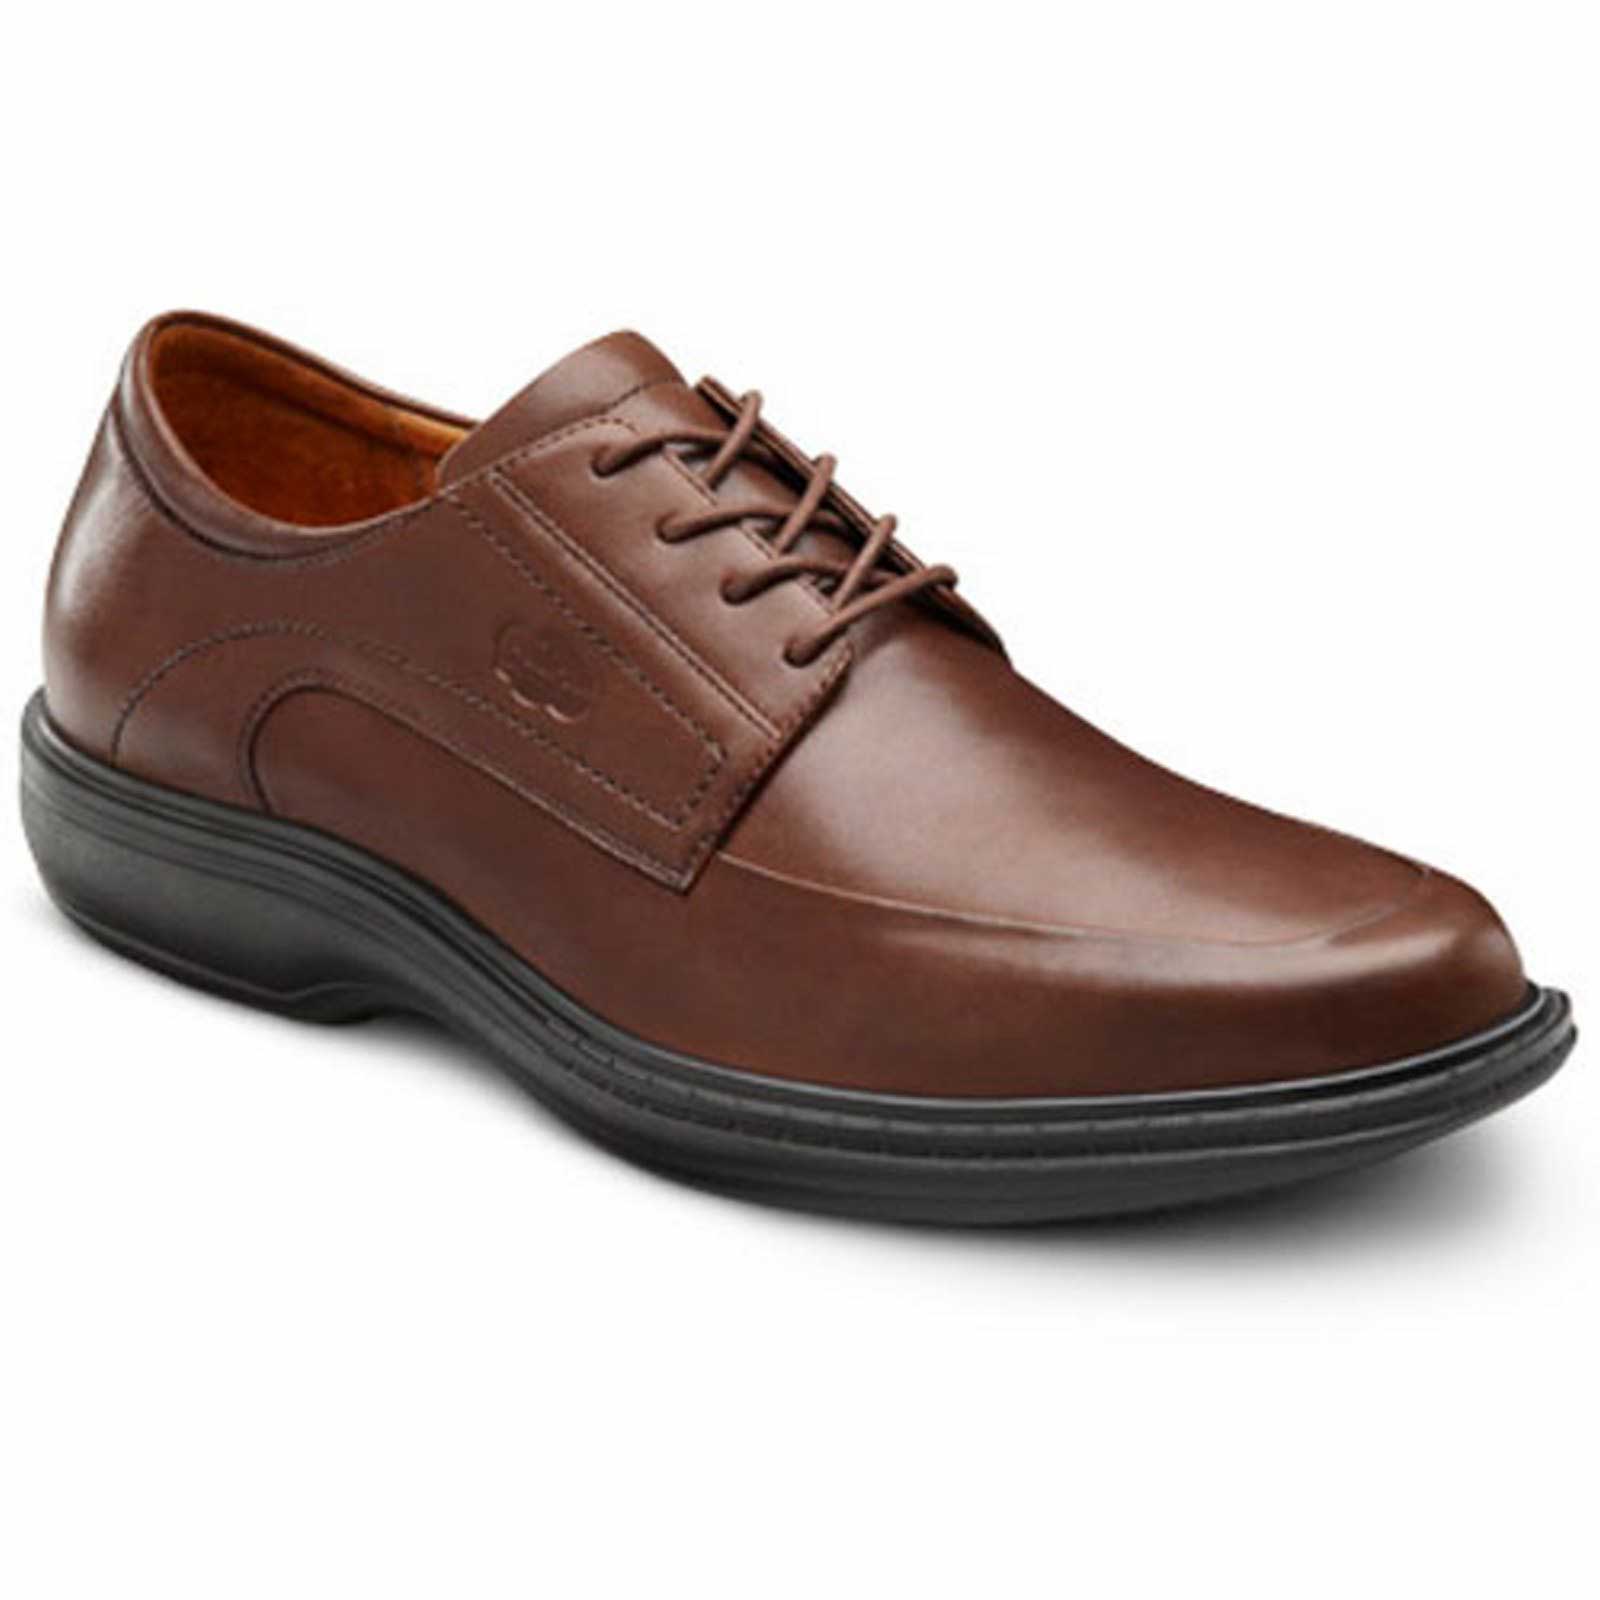 Buy Men Brown Formal Shoes Online - 860566 | Van Heusen